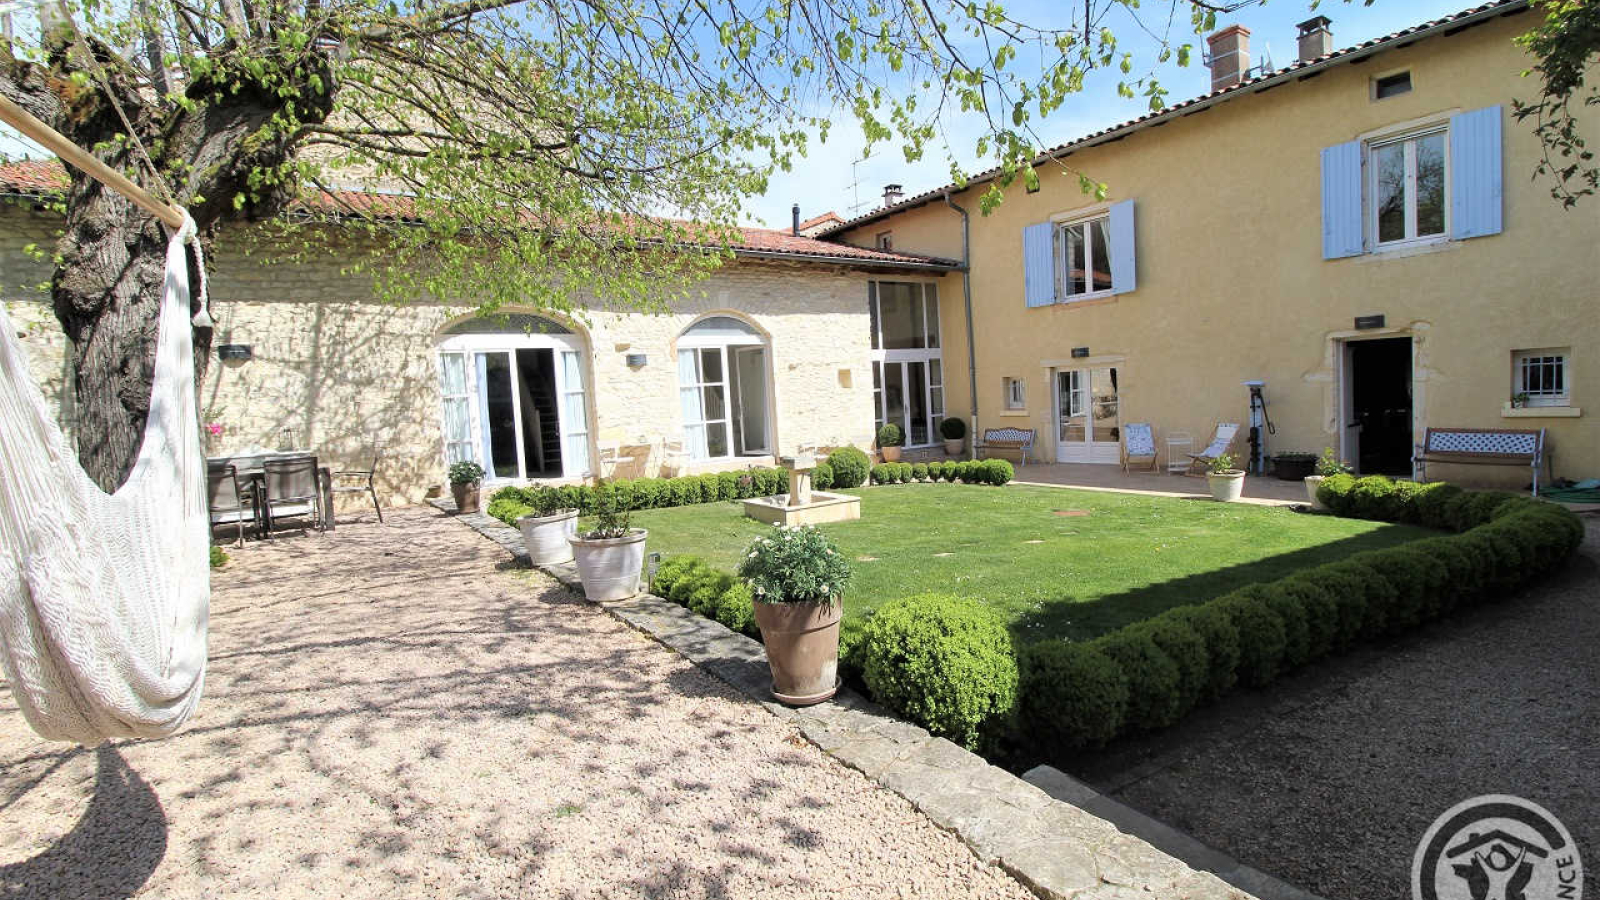 Chambres d'Hôtes 'Les 2 Tilleuls' à Lucenay dans le Beaujolais - Rhône : la maison et son jardin intérieur.